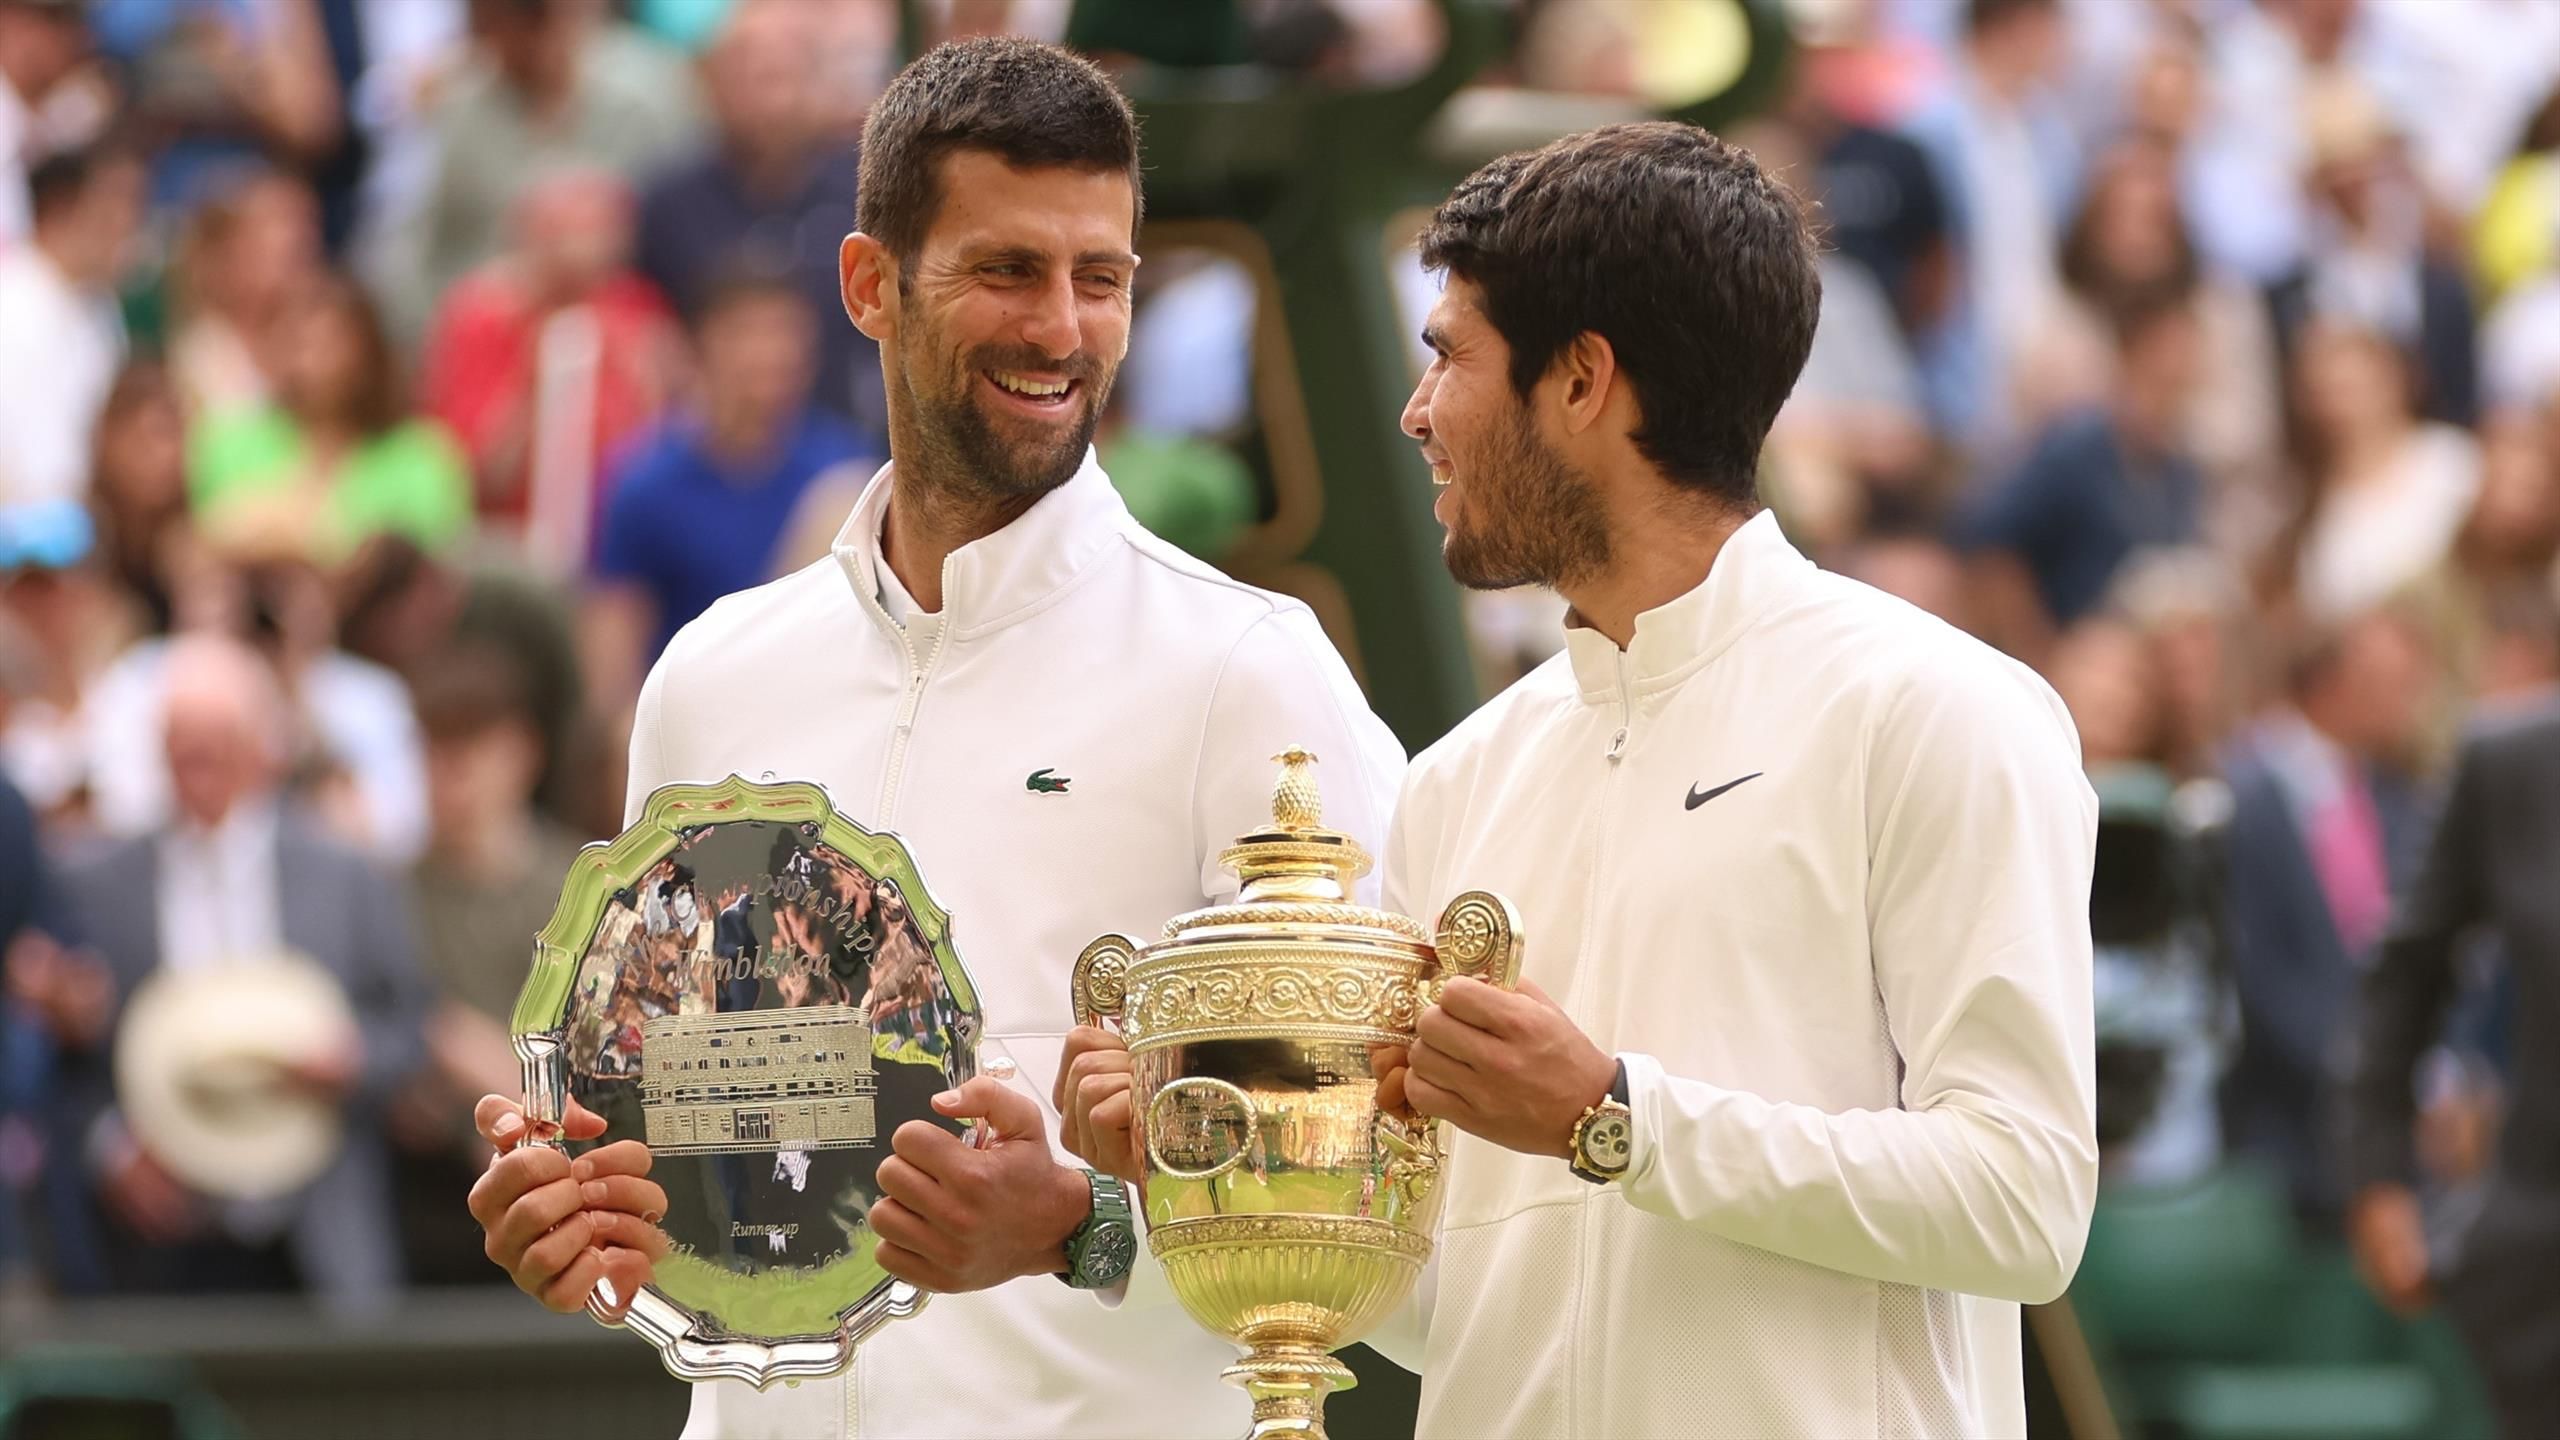 Carlos Alcaraz wins Wimbledon Rafael Nadal congratulates compatriot and tells him to enjoy the moment champion